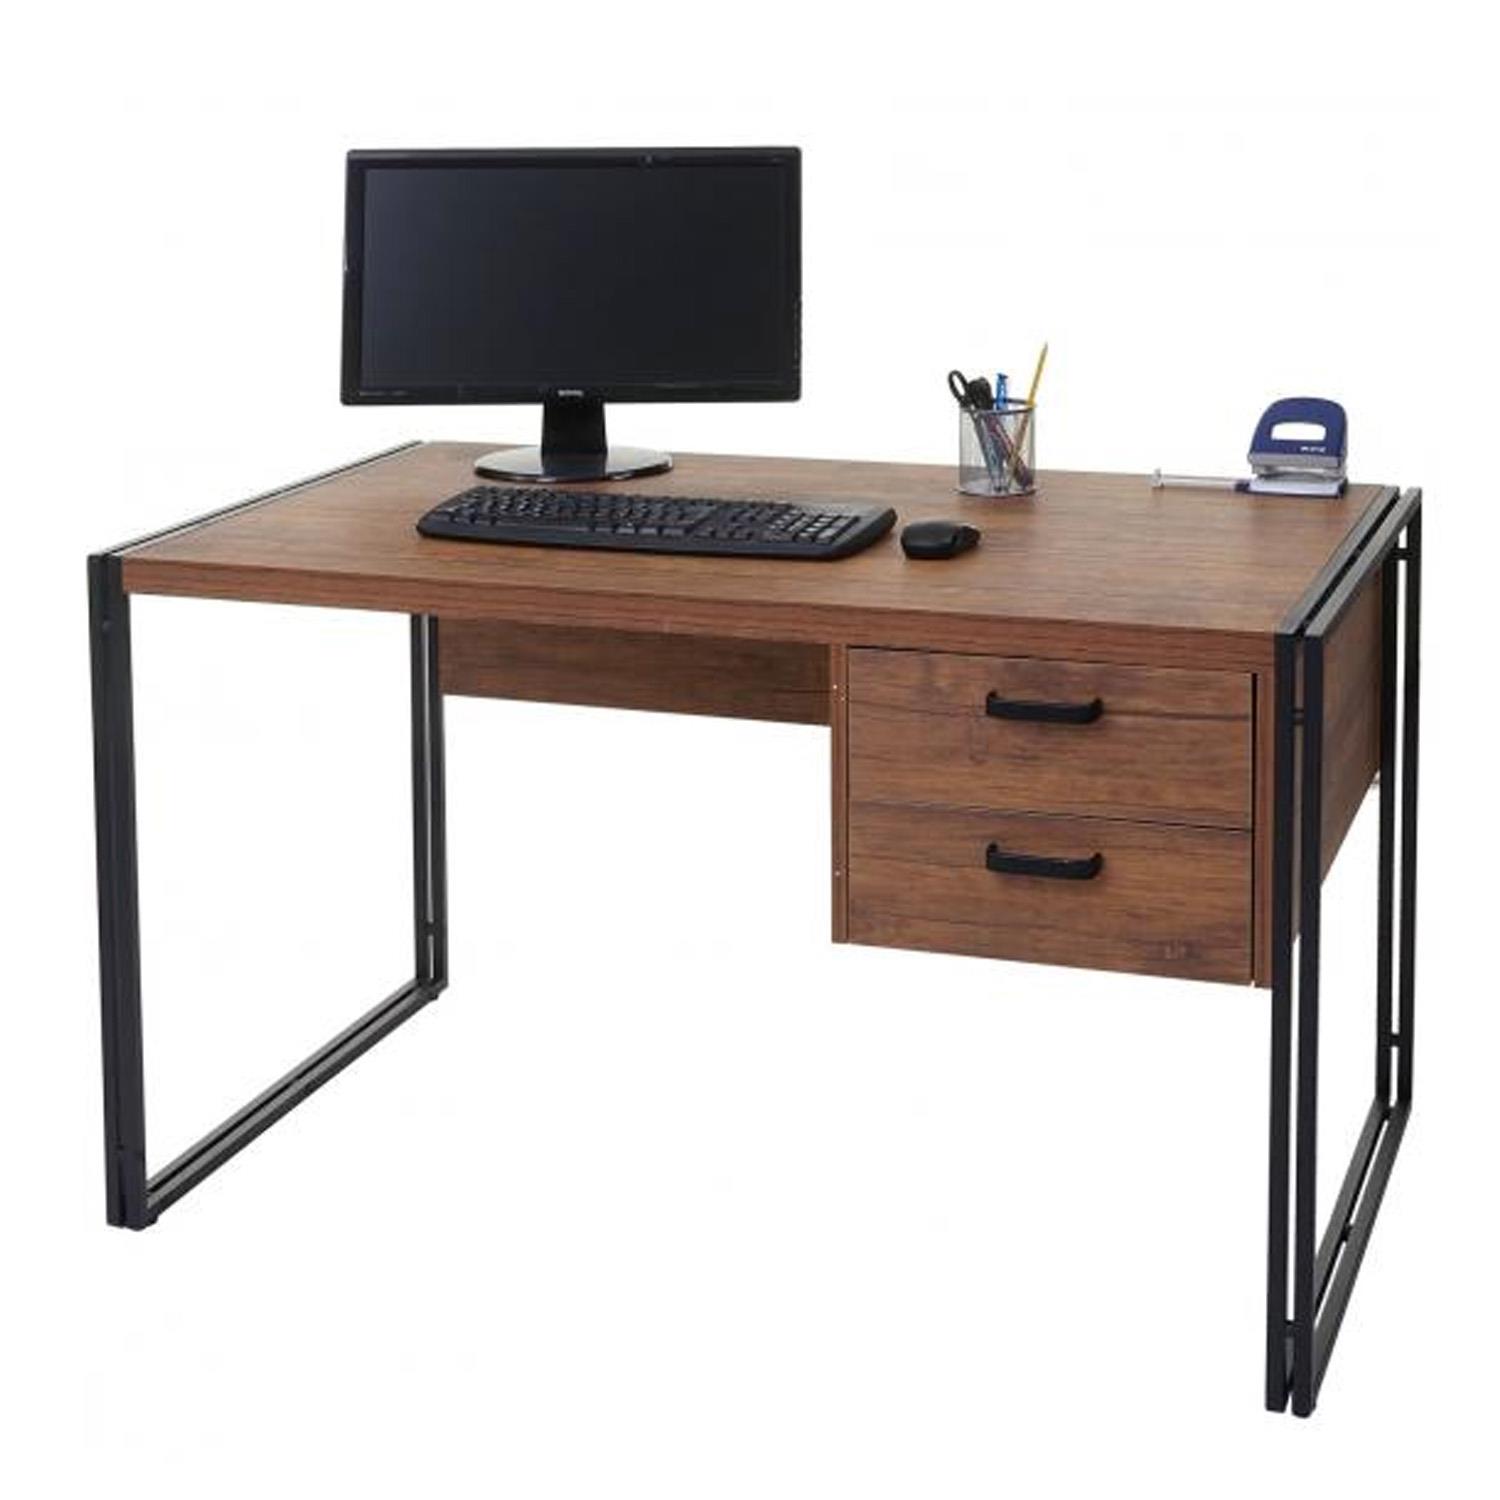 Schreibtisch ELSA, 76x122x73cm, Industriedesign, 2 Schubladen, Metallgestell und Holz, Farbe Eiche